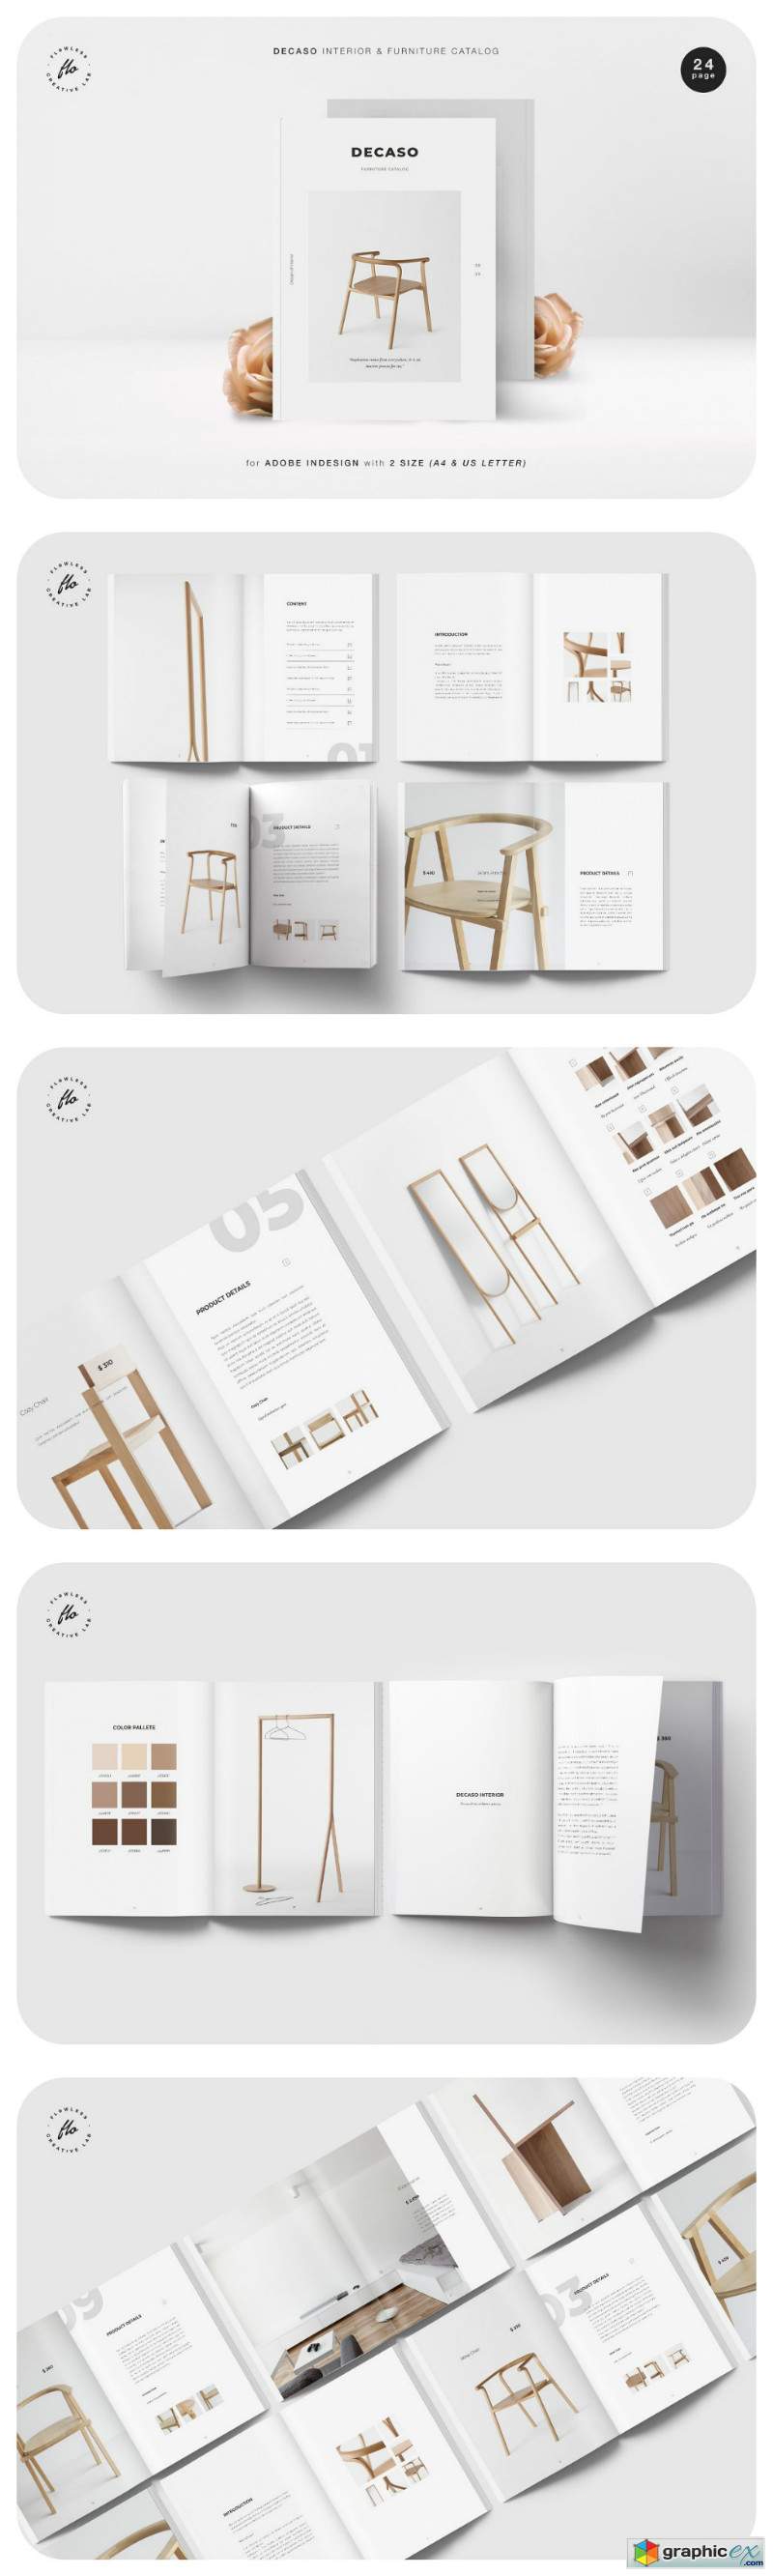 DECASO Interior & Furniture Catalog